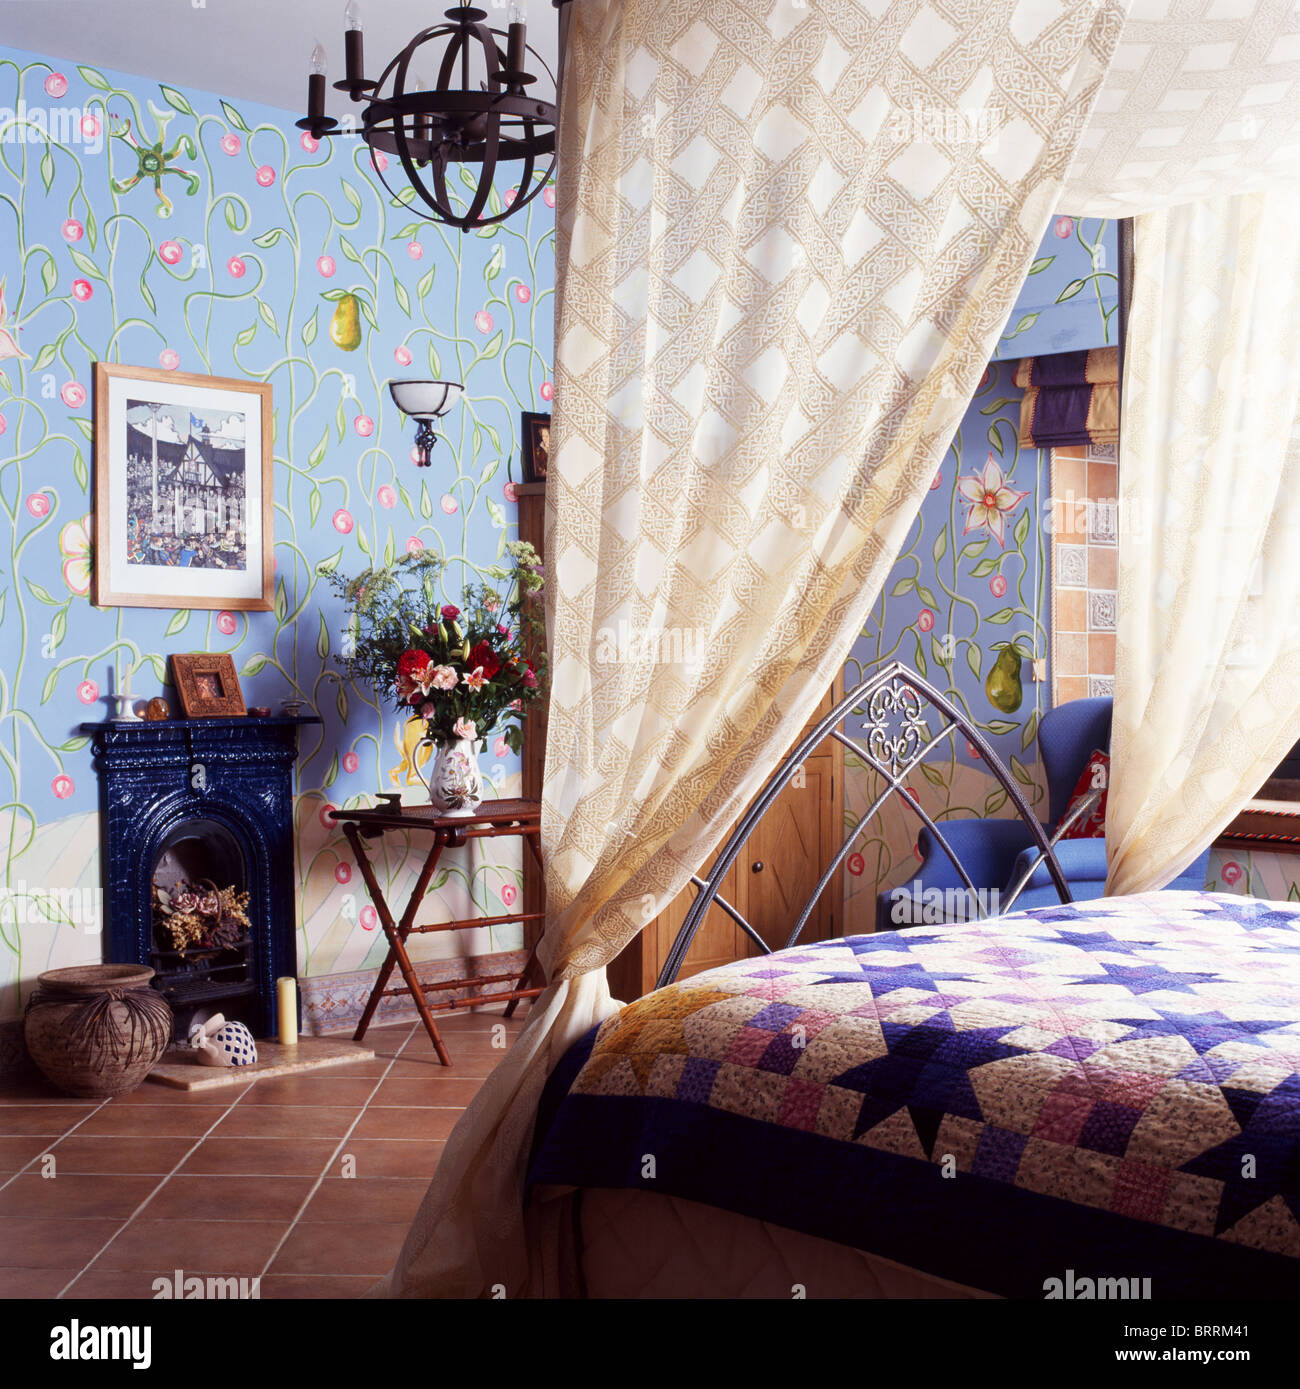 Gemusterte cremefarbene Vorhänge auf Gothic-Stil Bett mit Patchwork quilt  im Schlafzimmer mit blassen blauen Tapete und Steinbruch Fliesenboden  Stockfotografie - Alamy